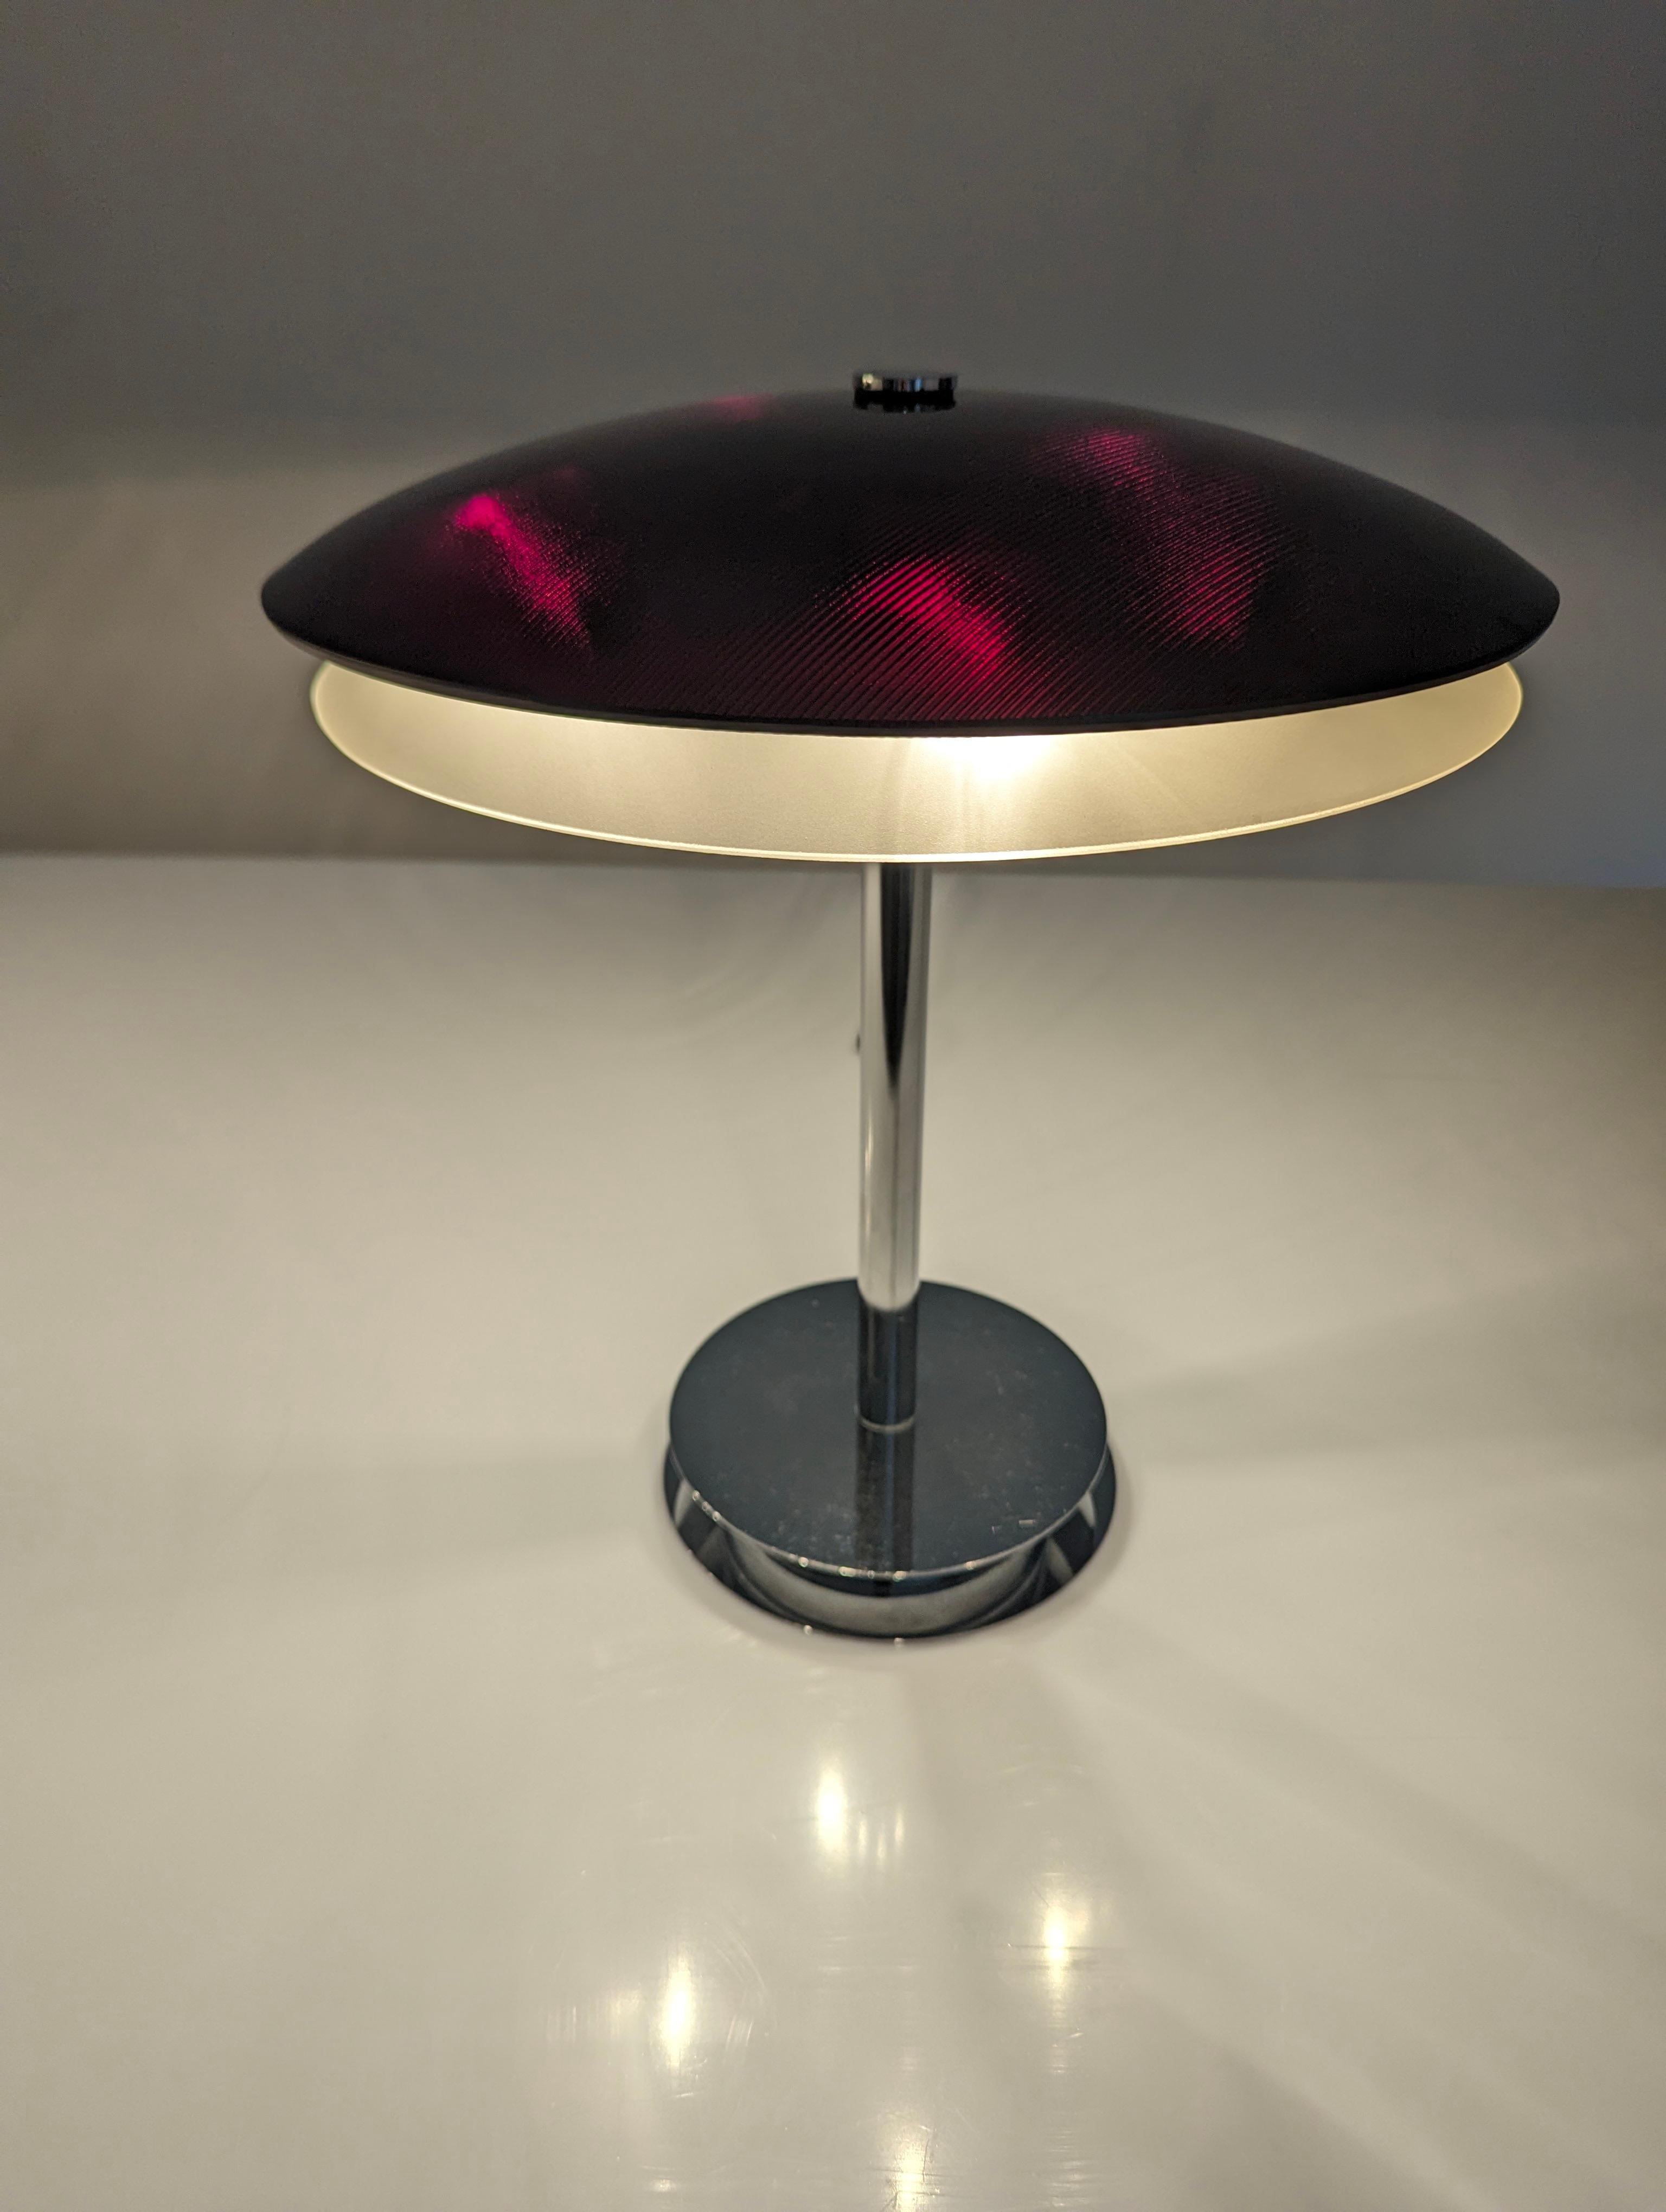 Élégante lampe de table conçue par Fontana Arte en 1954. Base bromée avec double plateau de cristal incurvé en noir avec des reflets rouge bordeaux lorsqu'il est allumé, et en bas blanc translucide qui émet une lumière agréable.